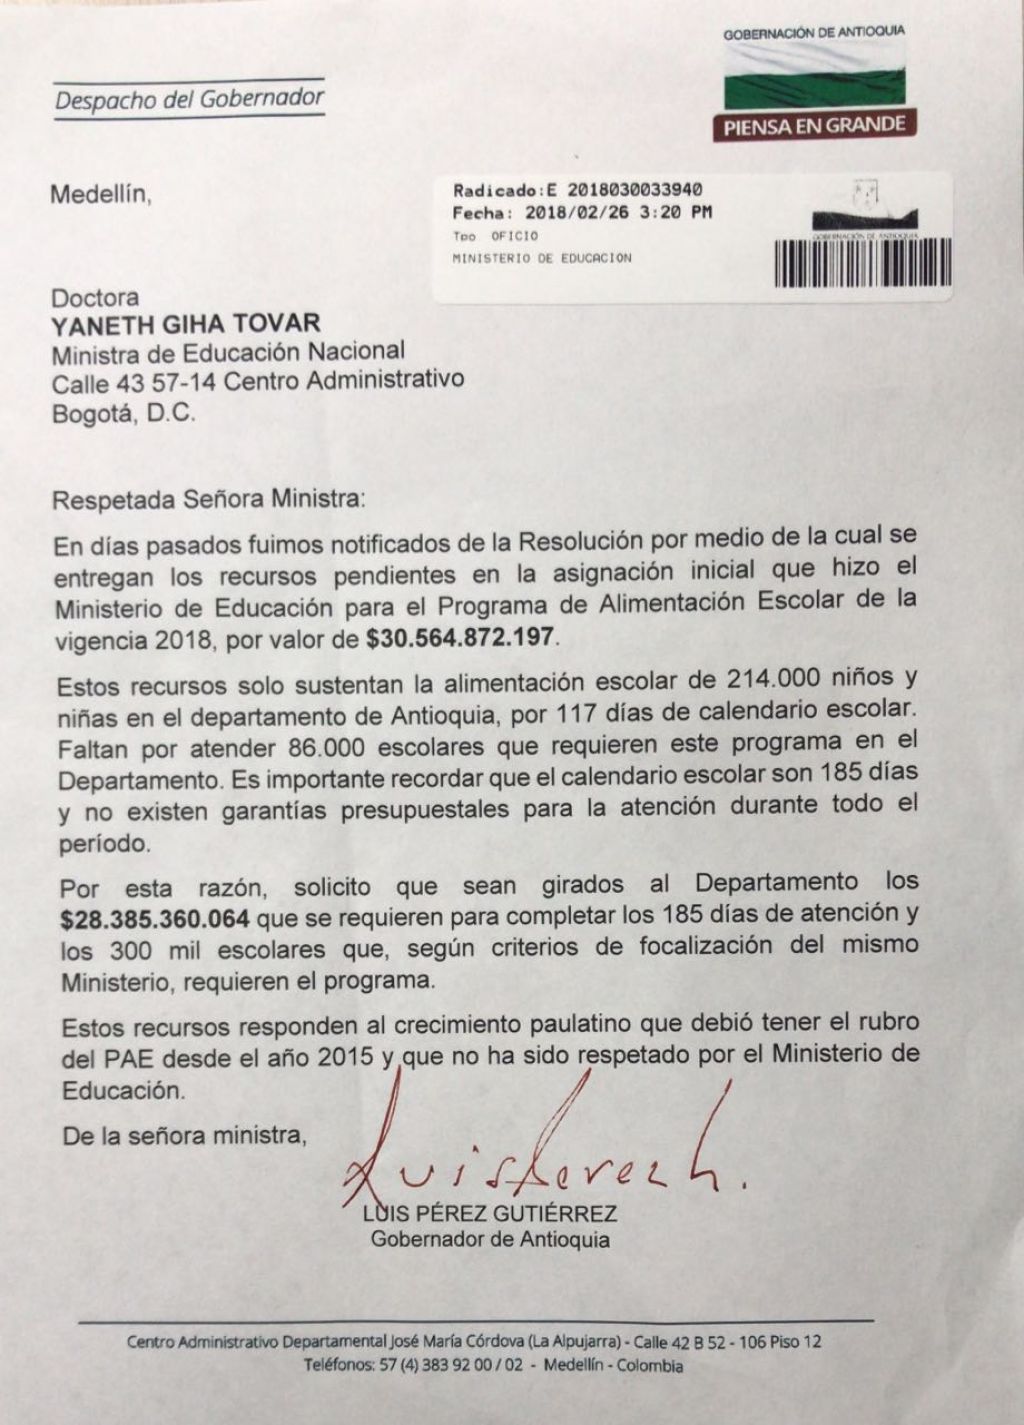 Carta enviada por el Gobernador de Antioquia a la Ministra de Educación, solicitando recursos que faltan del PAE